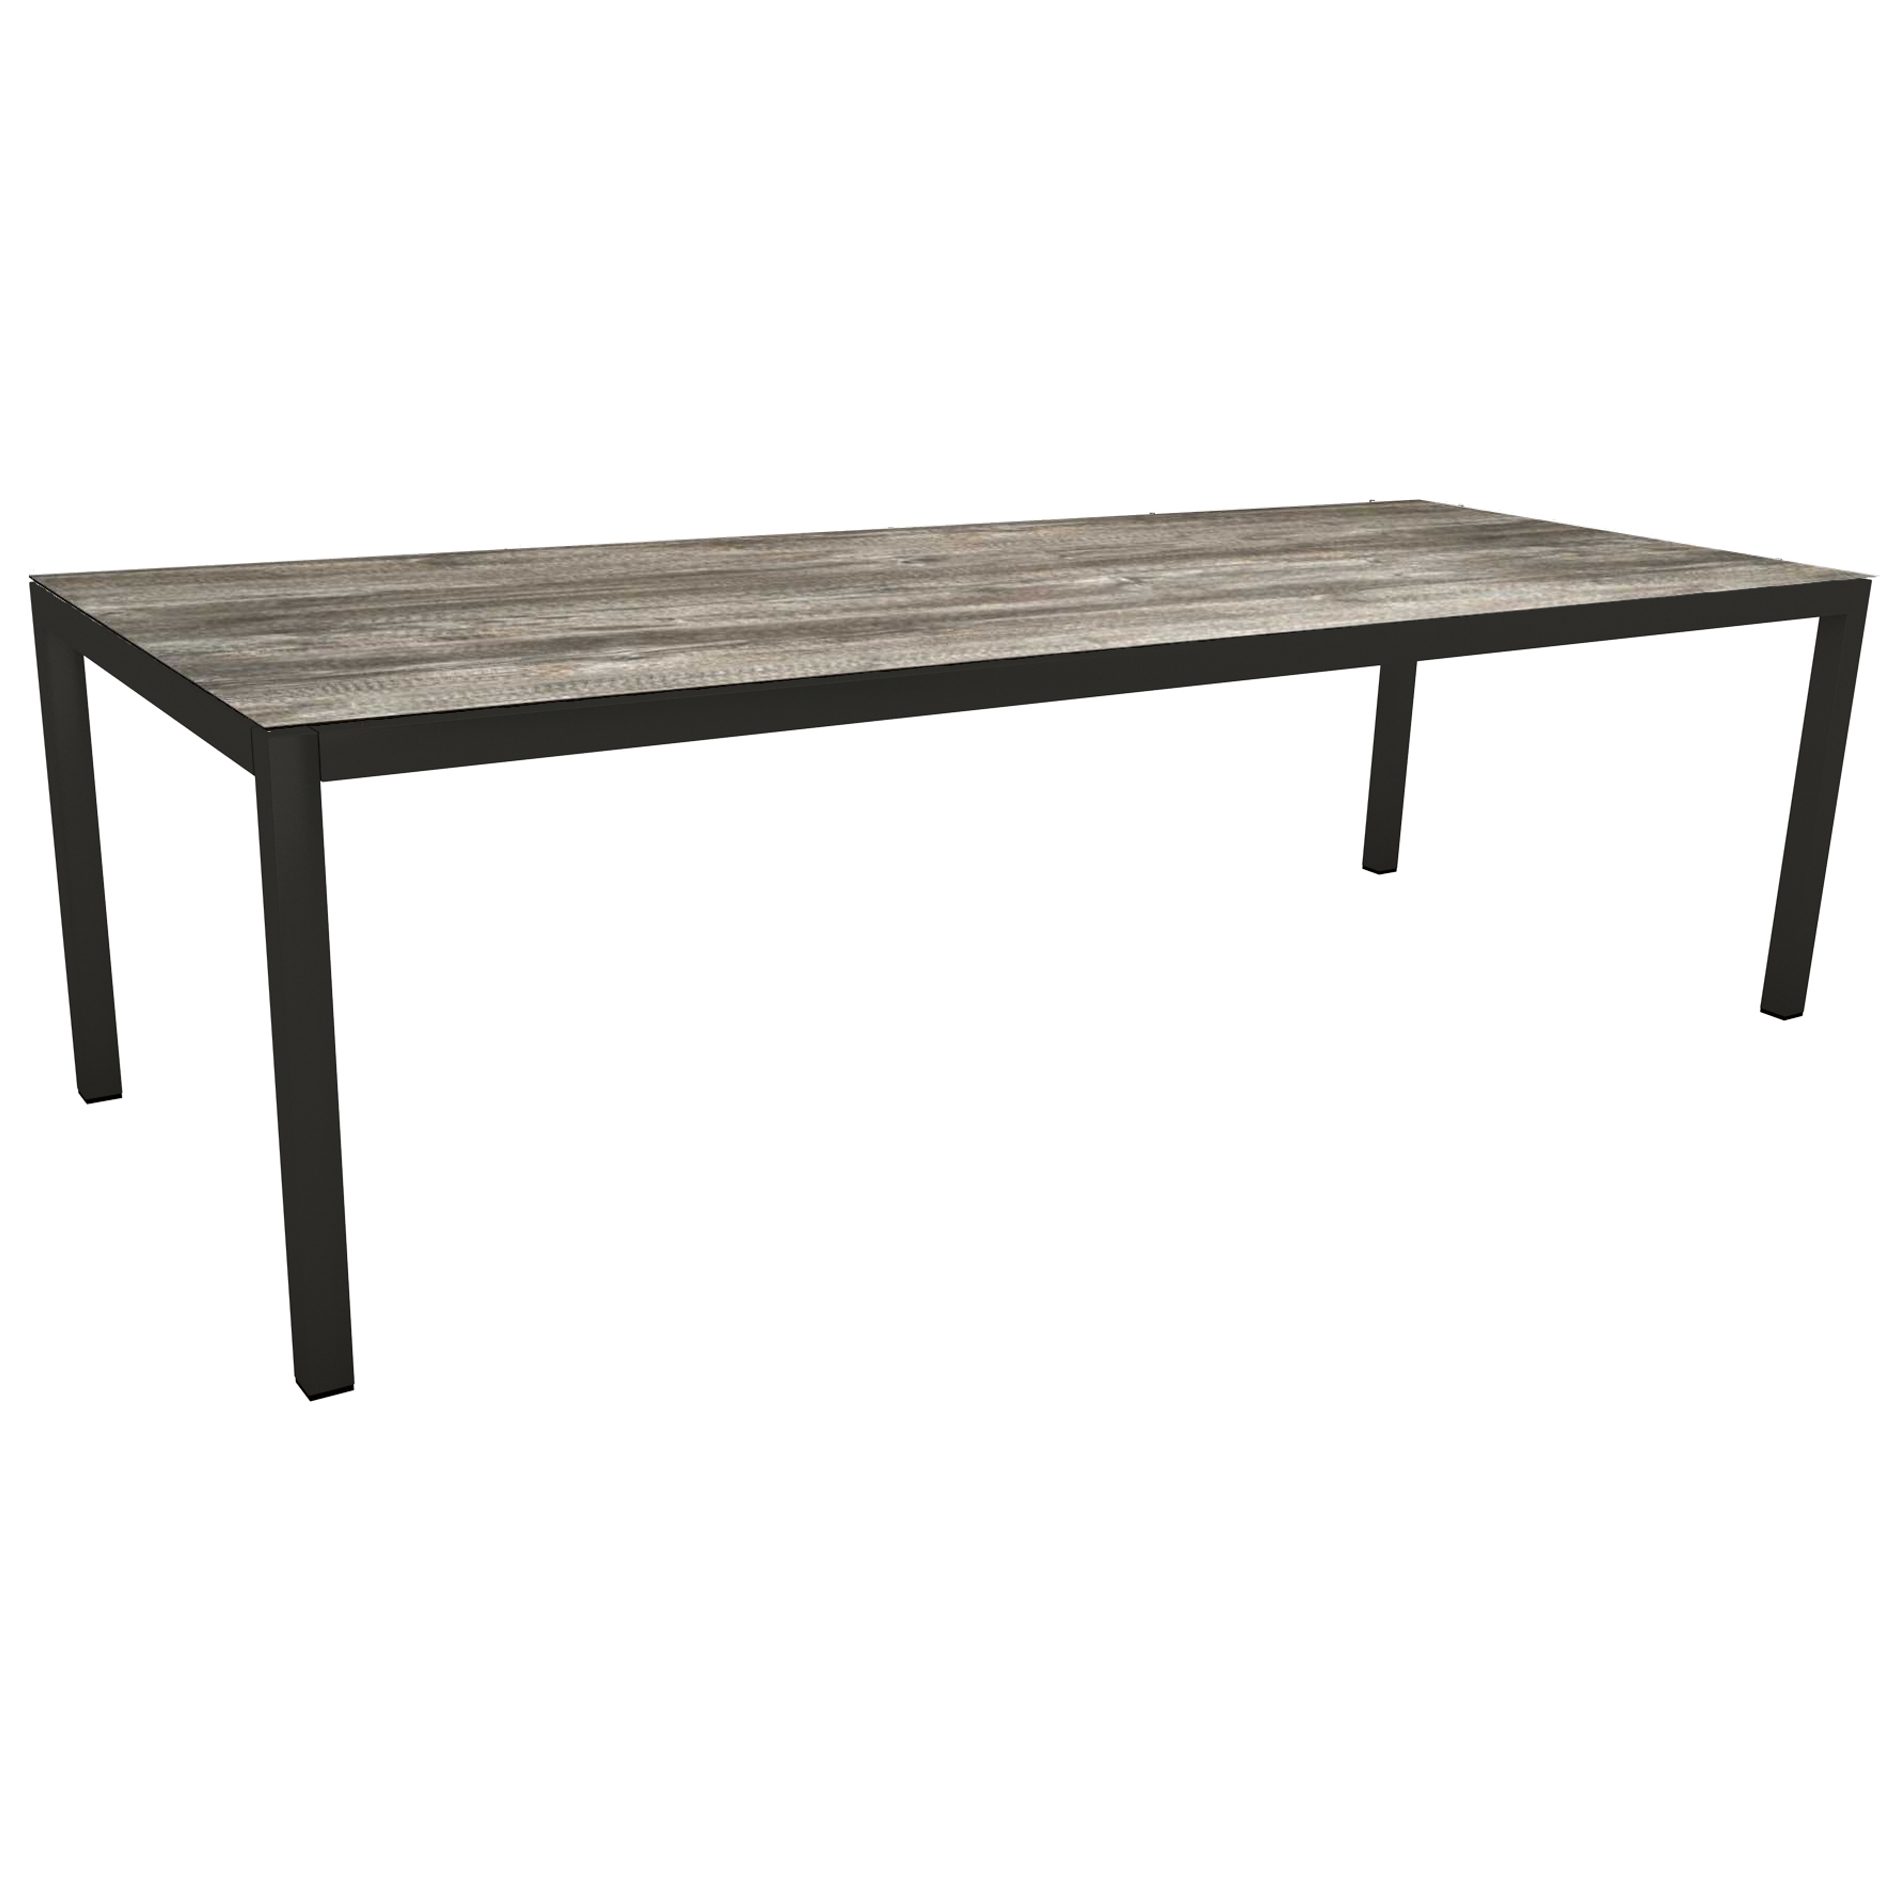 Stern Gartentisch, Gestell Aluminium schwarz matt, Tischplatte HPL Tundra Grau, 250x100cm